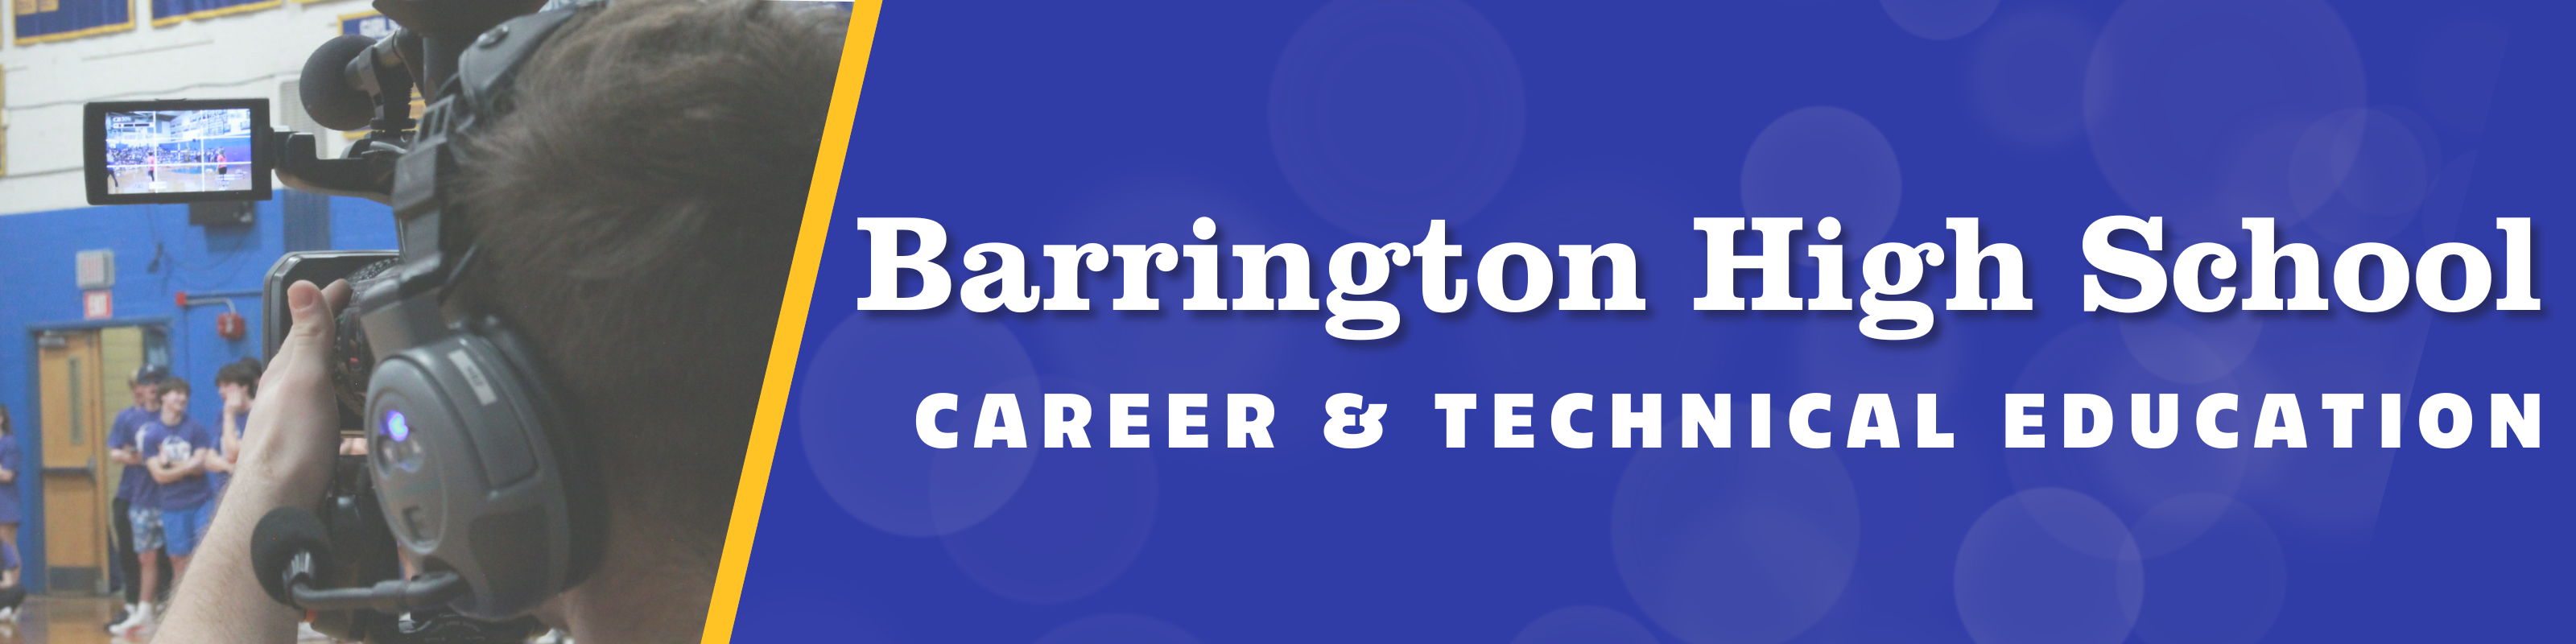 Barrington high school career and technical education